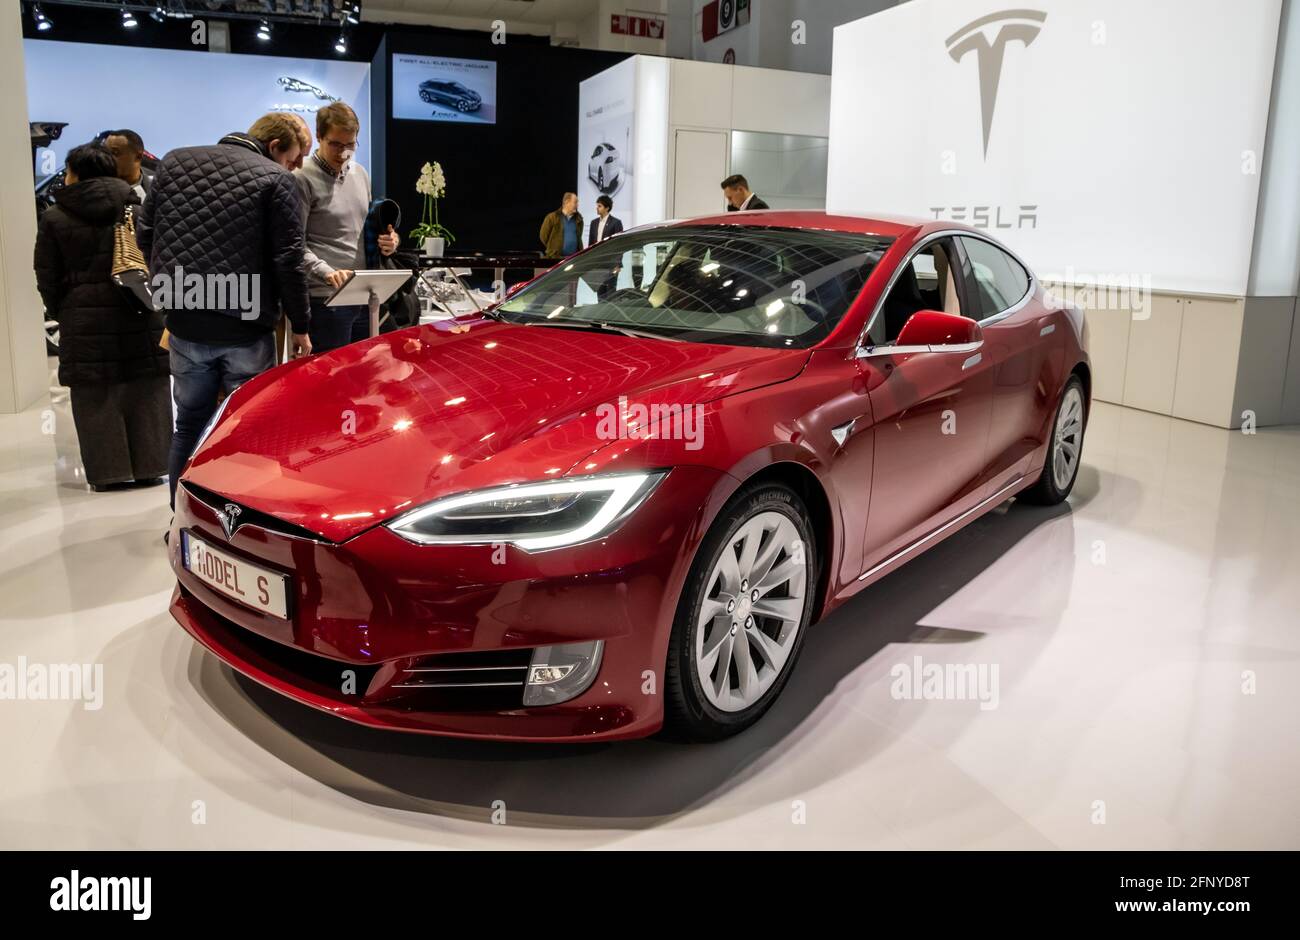 L'auto elettrica Tesla Model S è presentata al salone automobilistico Autosalon di Bruxelles Expo. Belgio - 19 gennaio 2017 Foto Stock